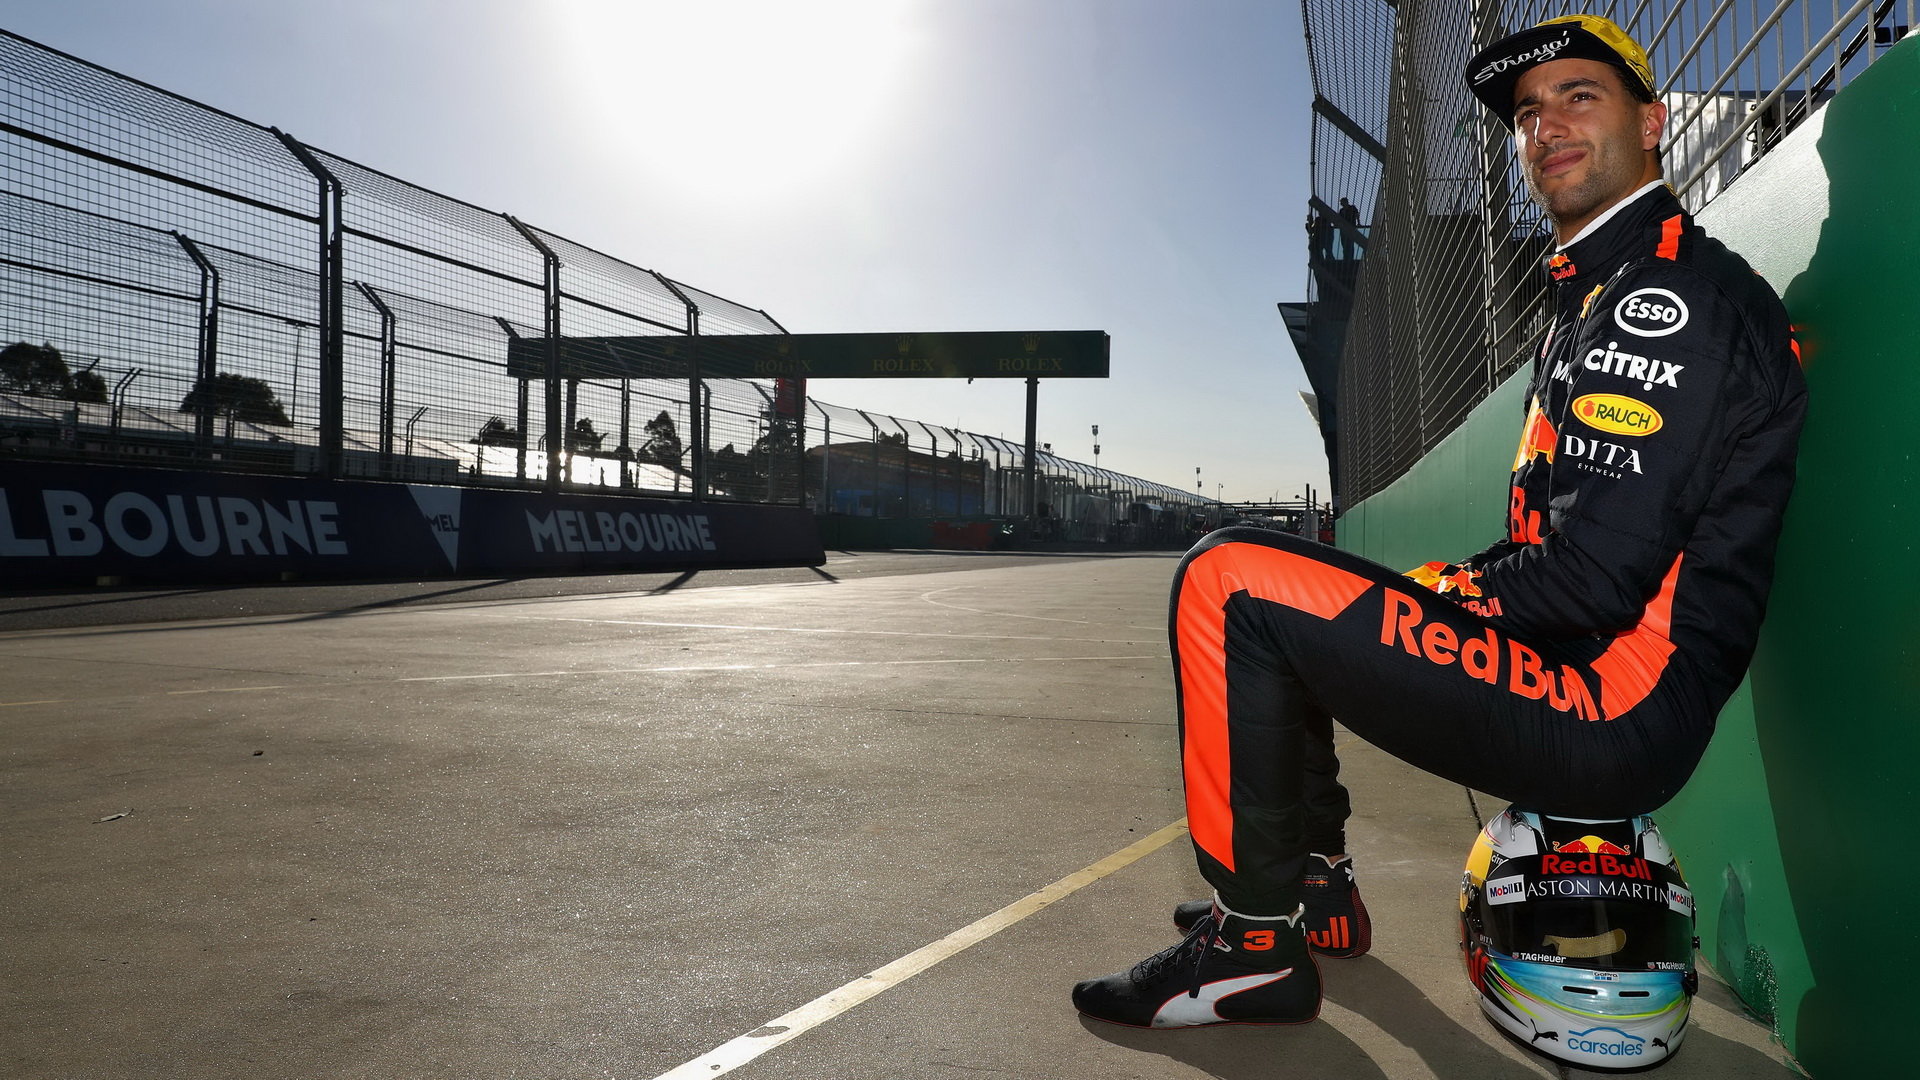 Ricciardovy šance na vítězství v nedělním závodě klesají